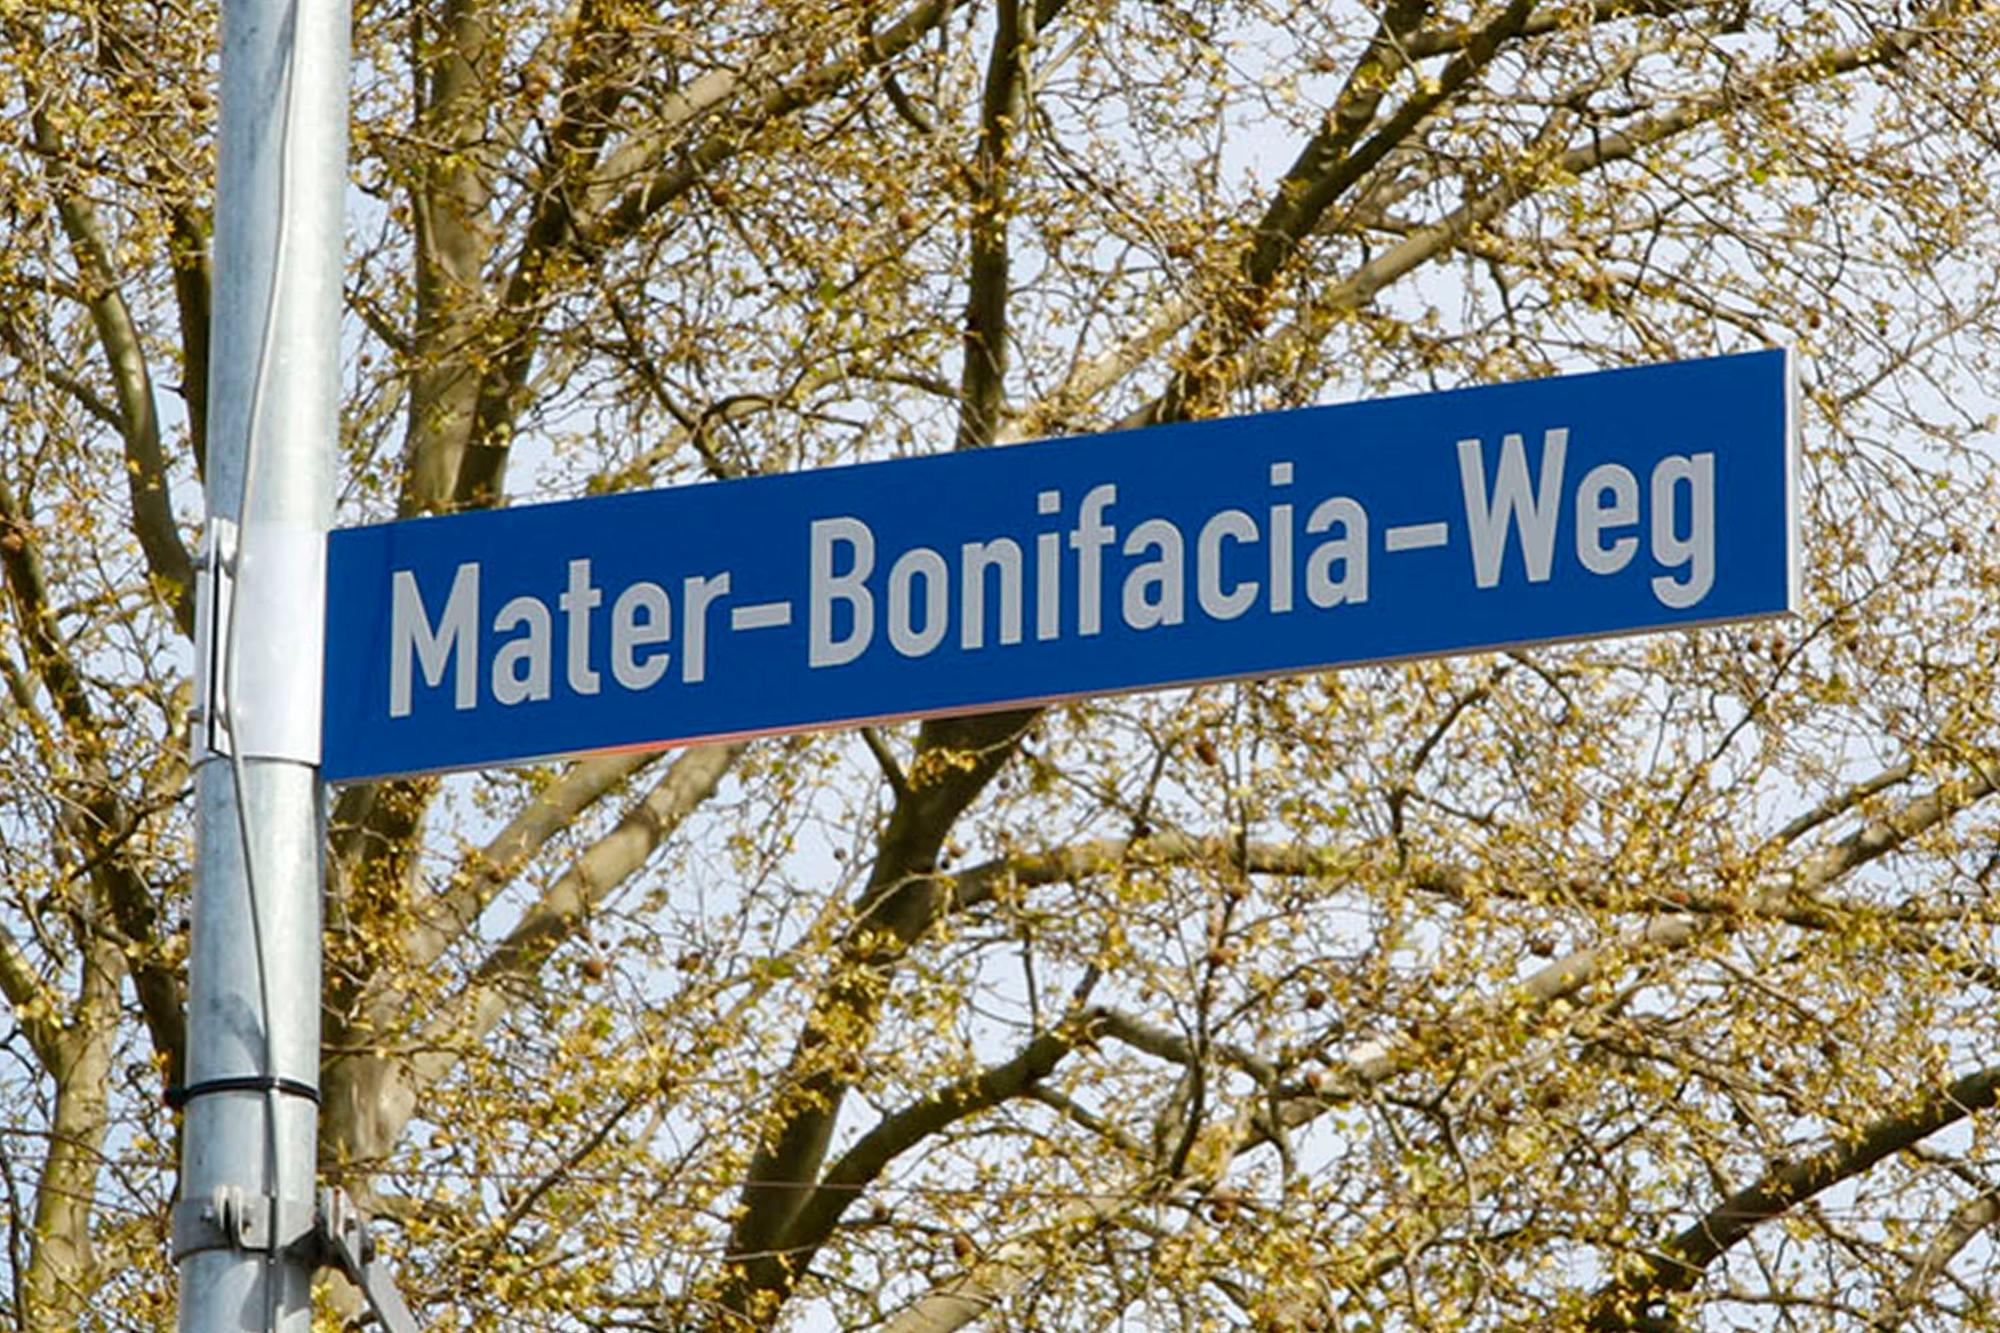 mater-bonifacia-weg